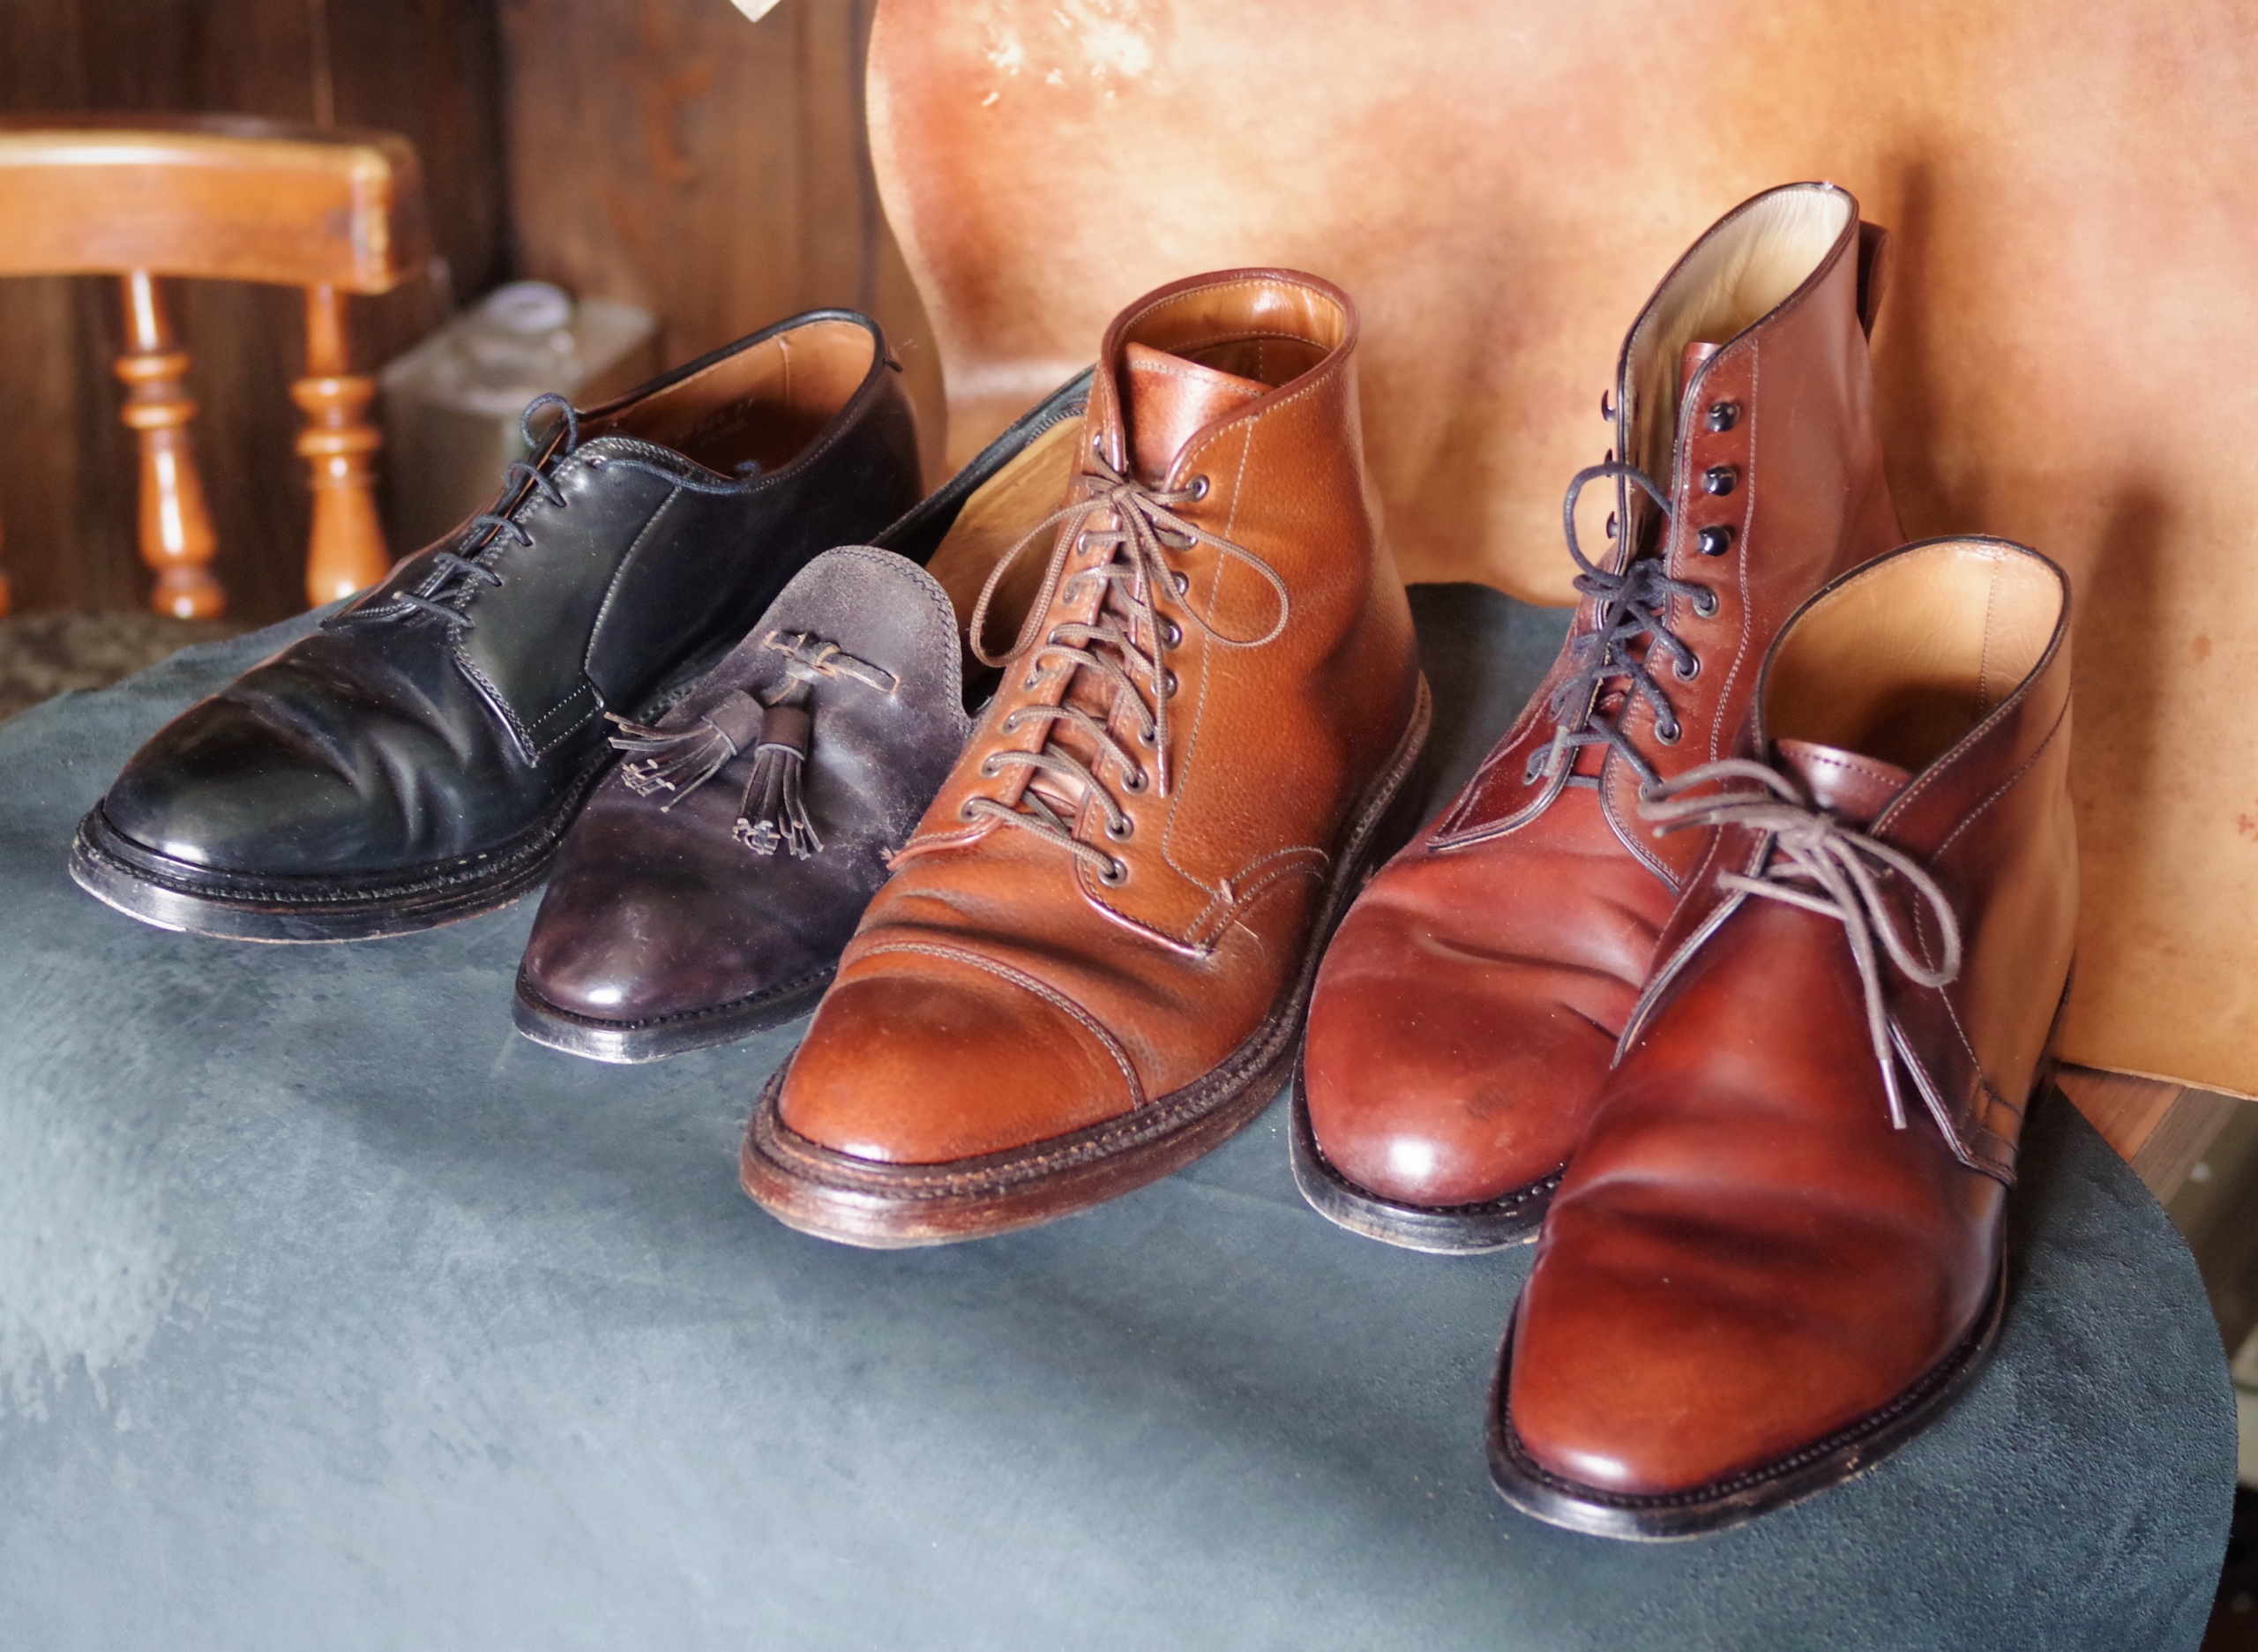 革靴に関するおはなし。 第2回-③ 革靴の流行りについて - 革靴